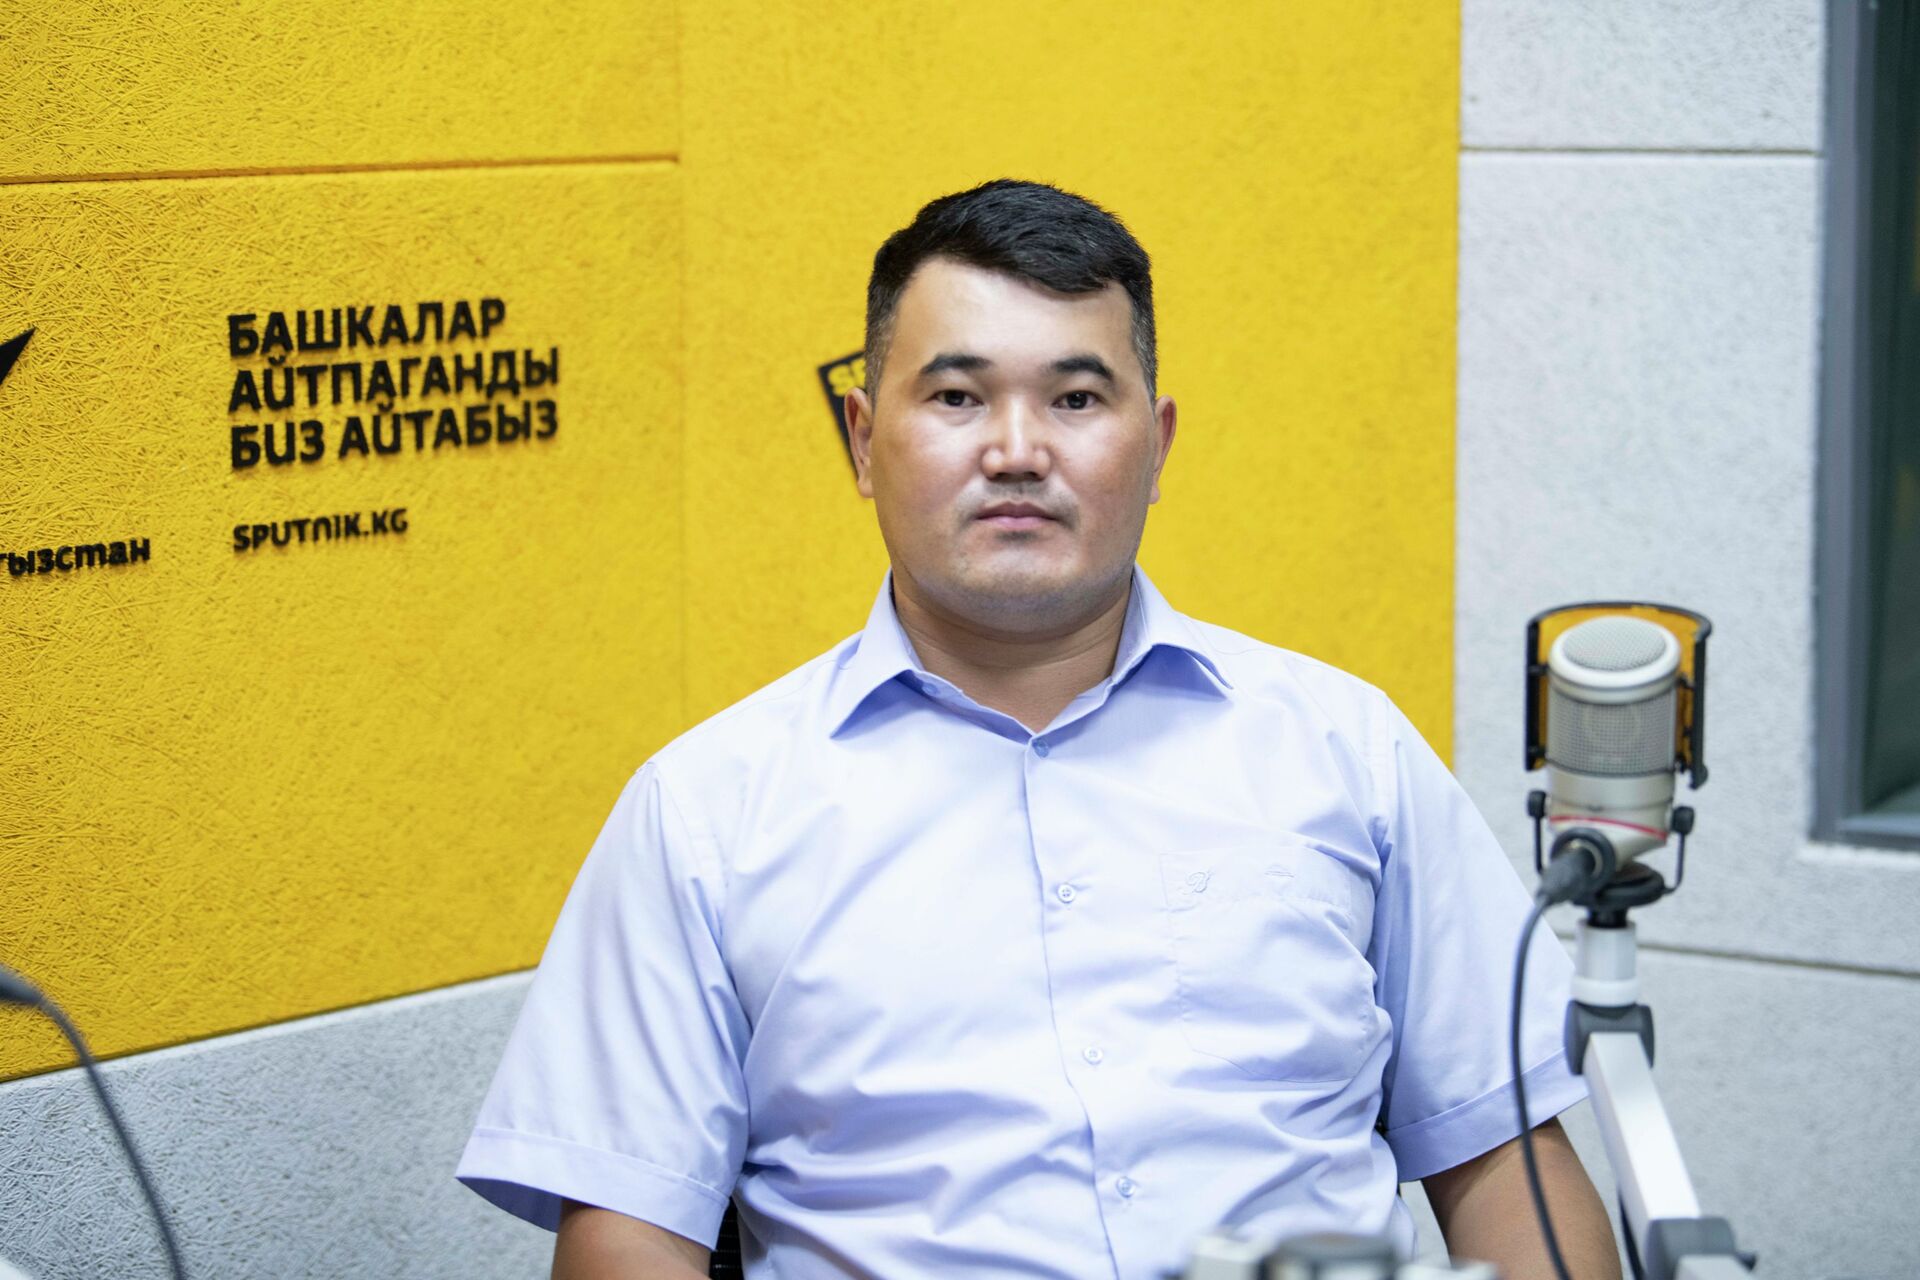 Зачем нужны эксперты по энергоэффективности зданий — беседа со специалистами - Sputnik Кыргызстан, 1920, 11.08.2021